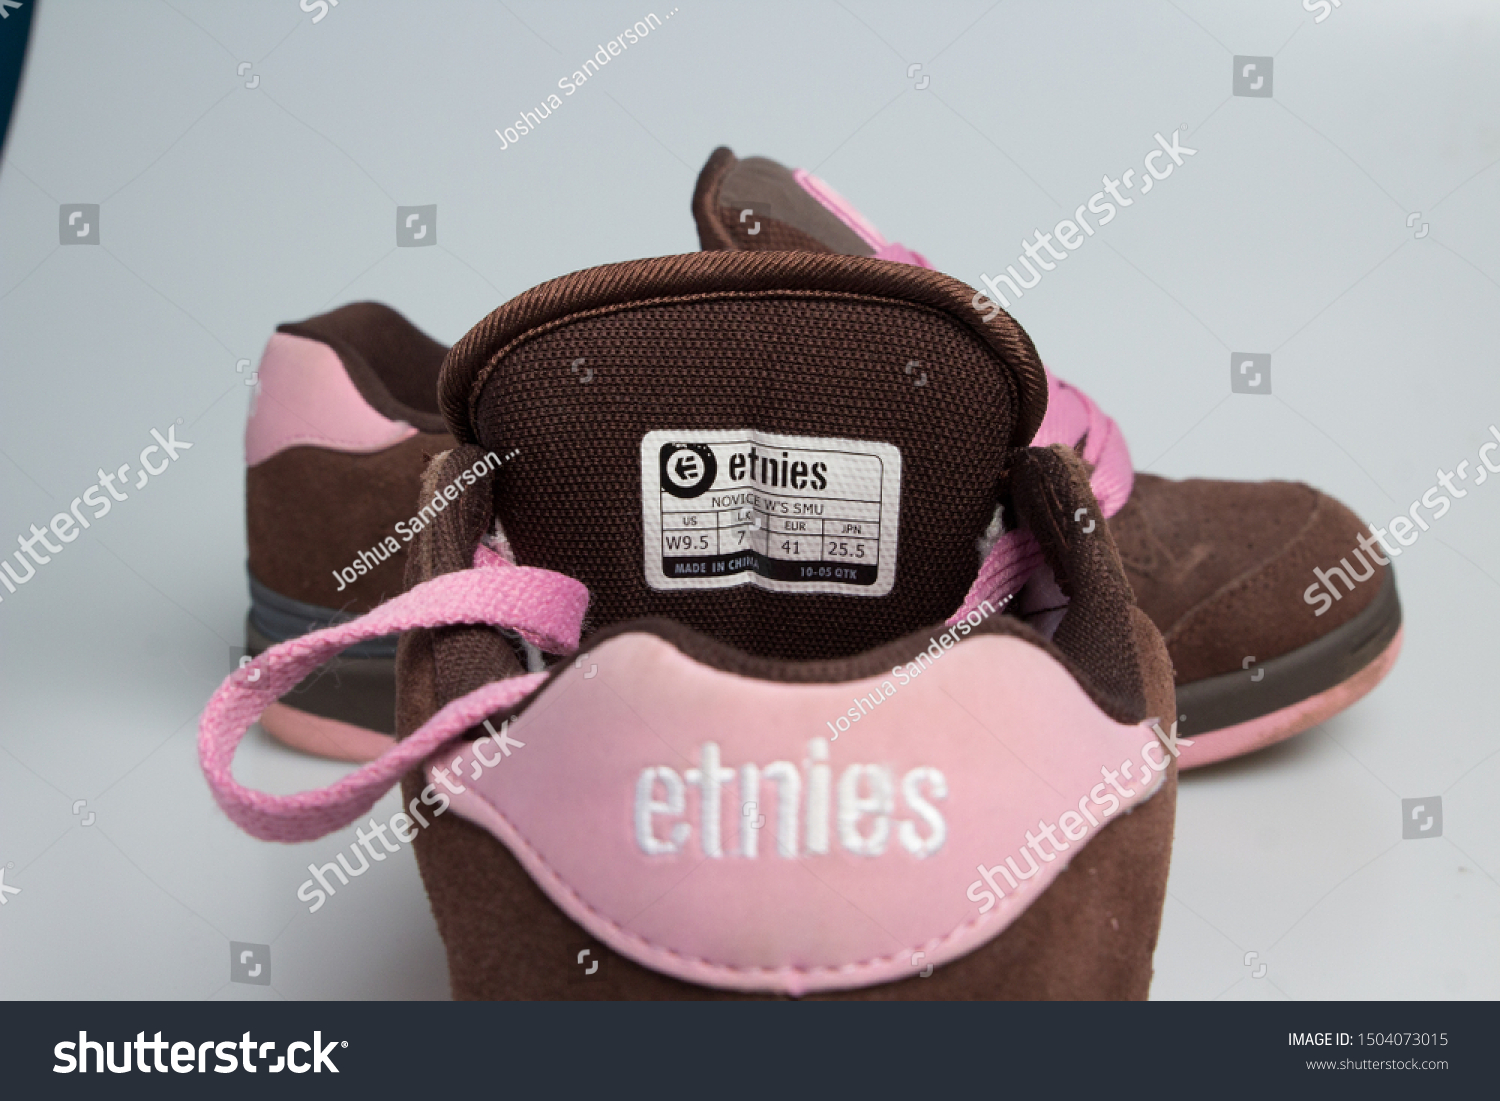 etnies shoes 90s